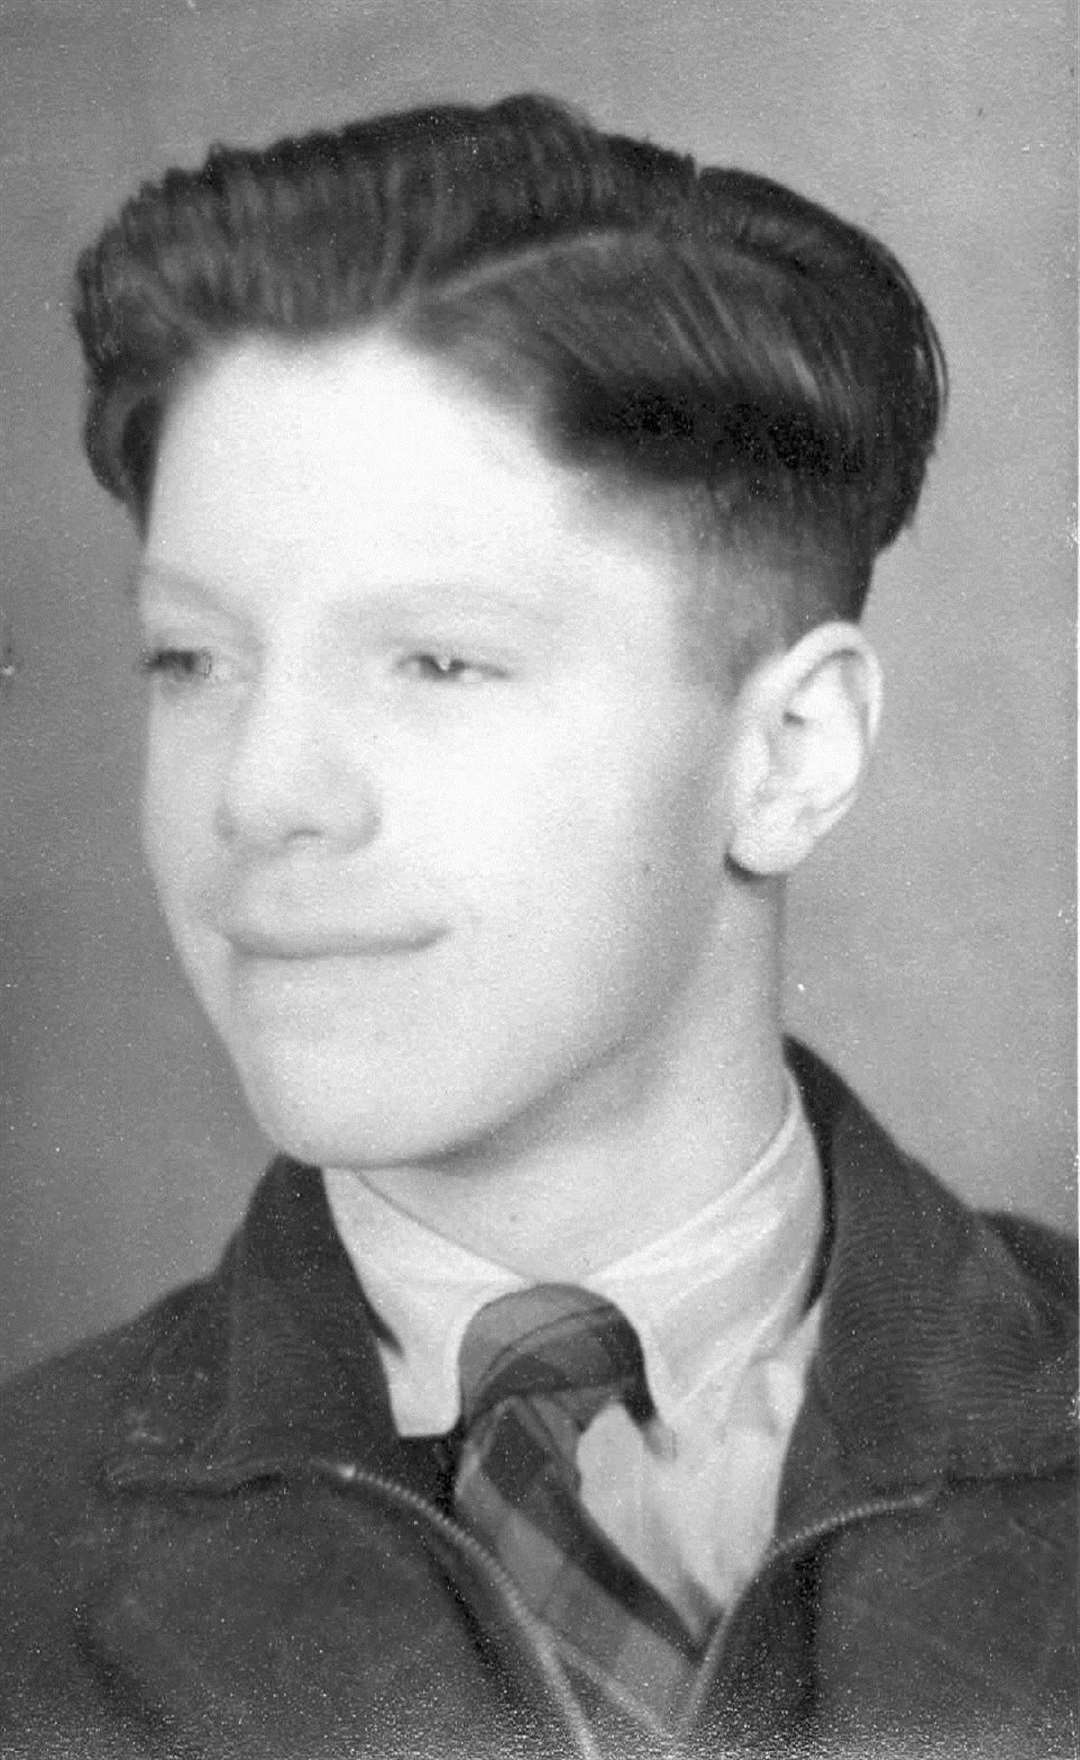 Cllr Daley, aged 14